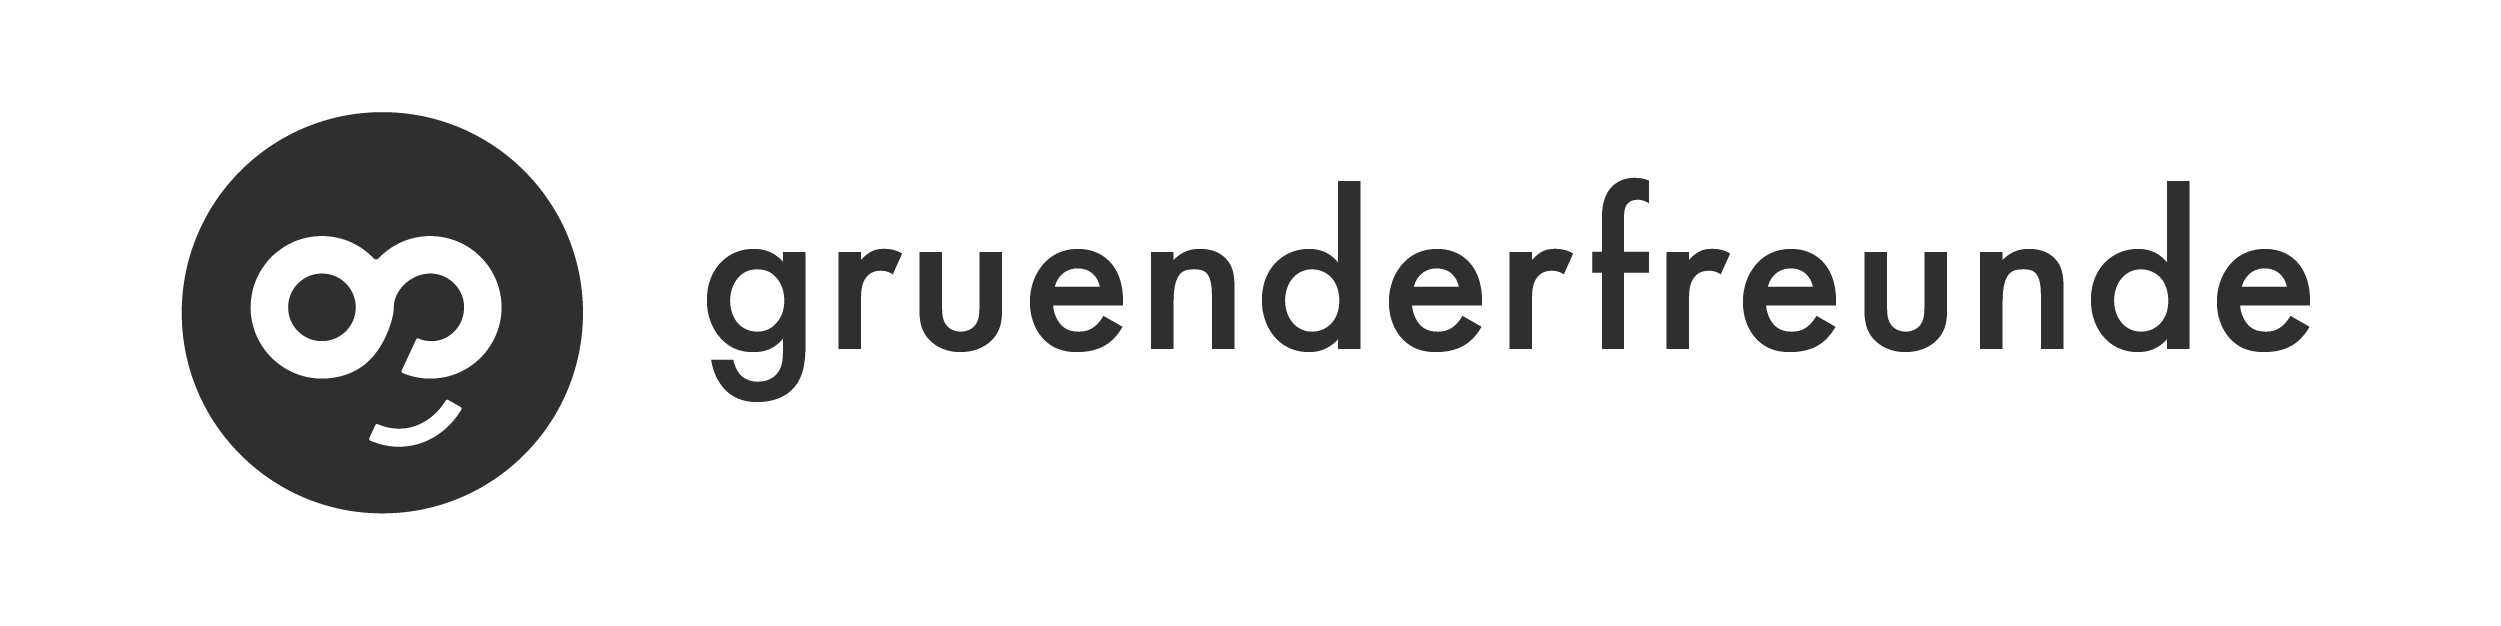 Gruenderfreunde Logo